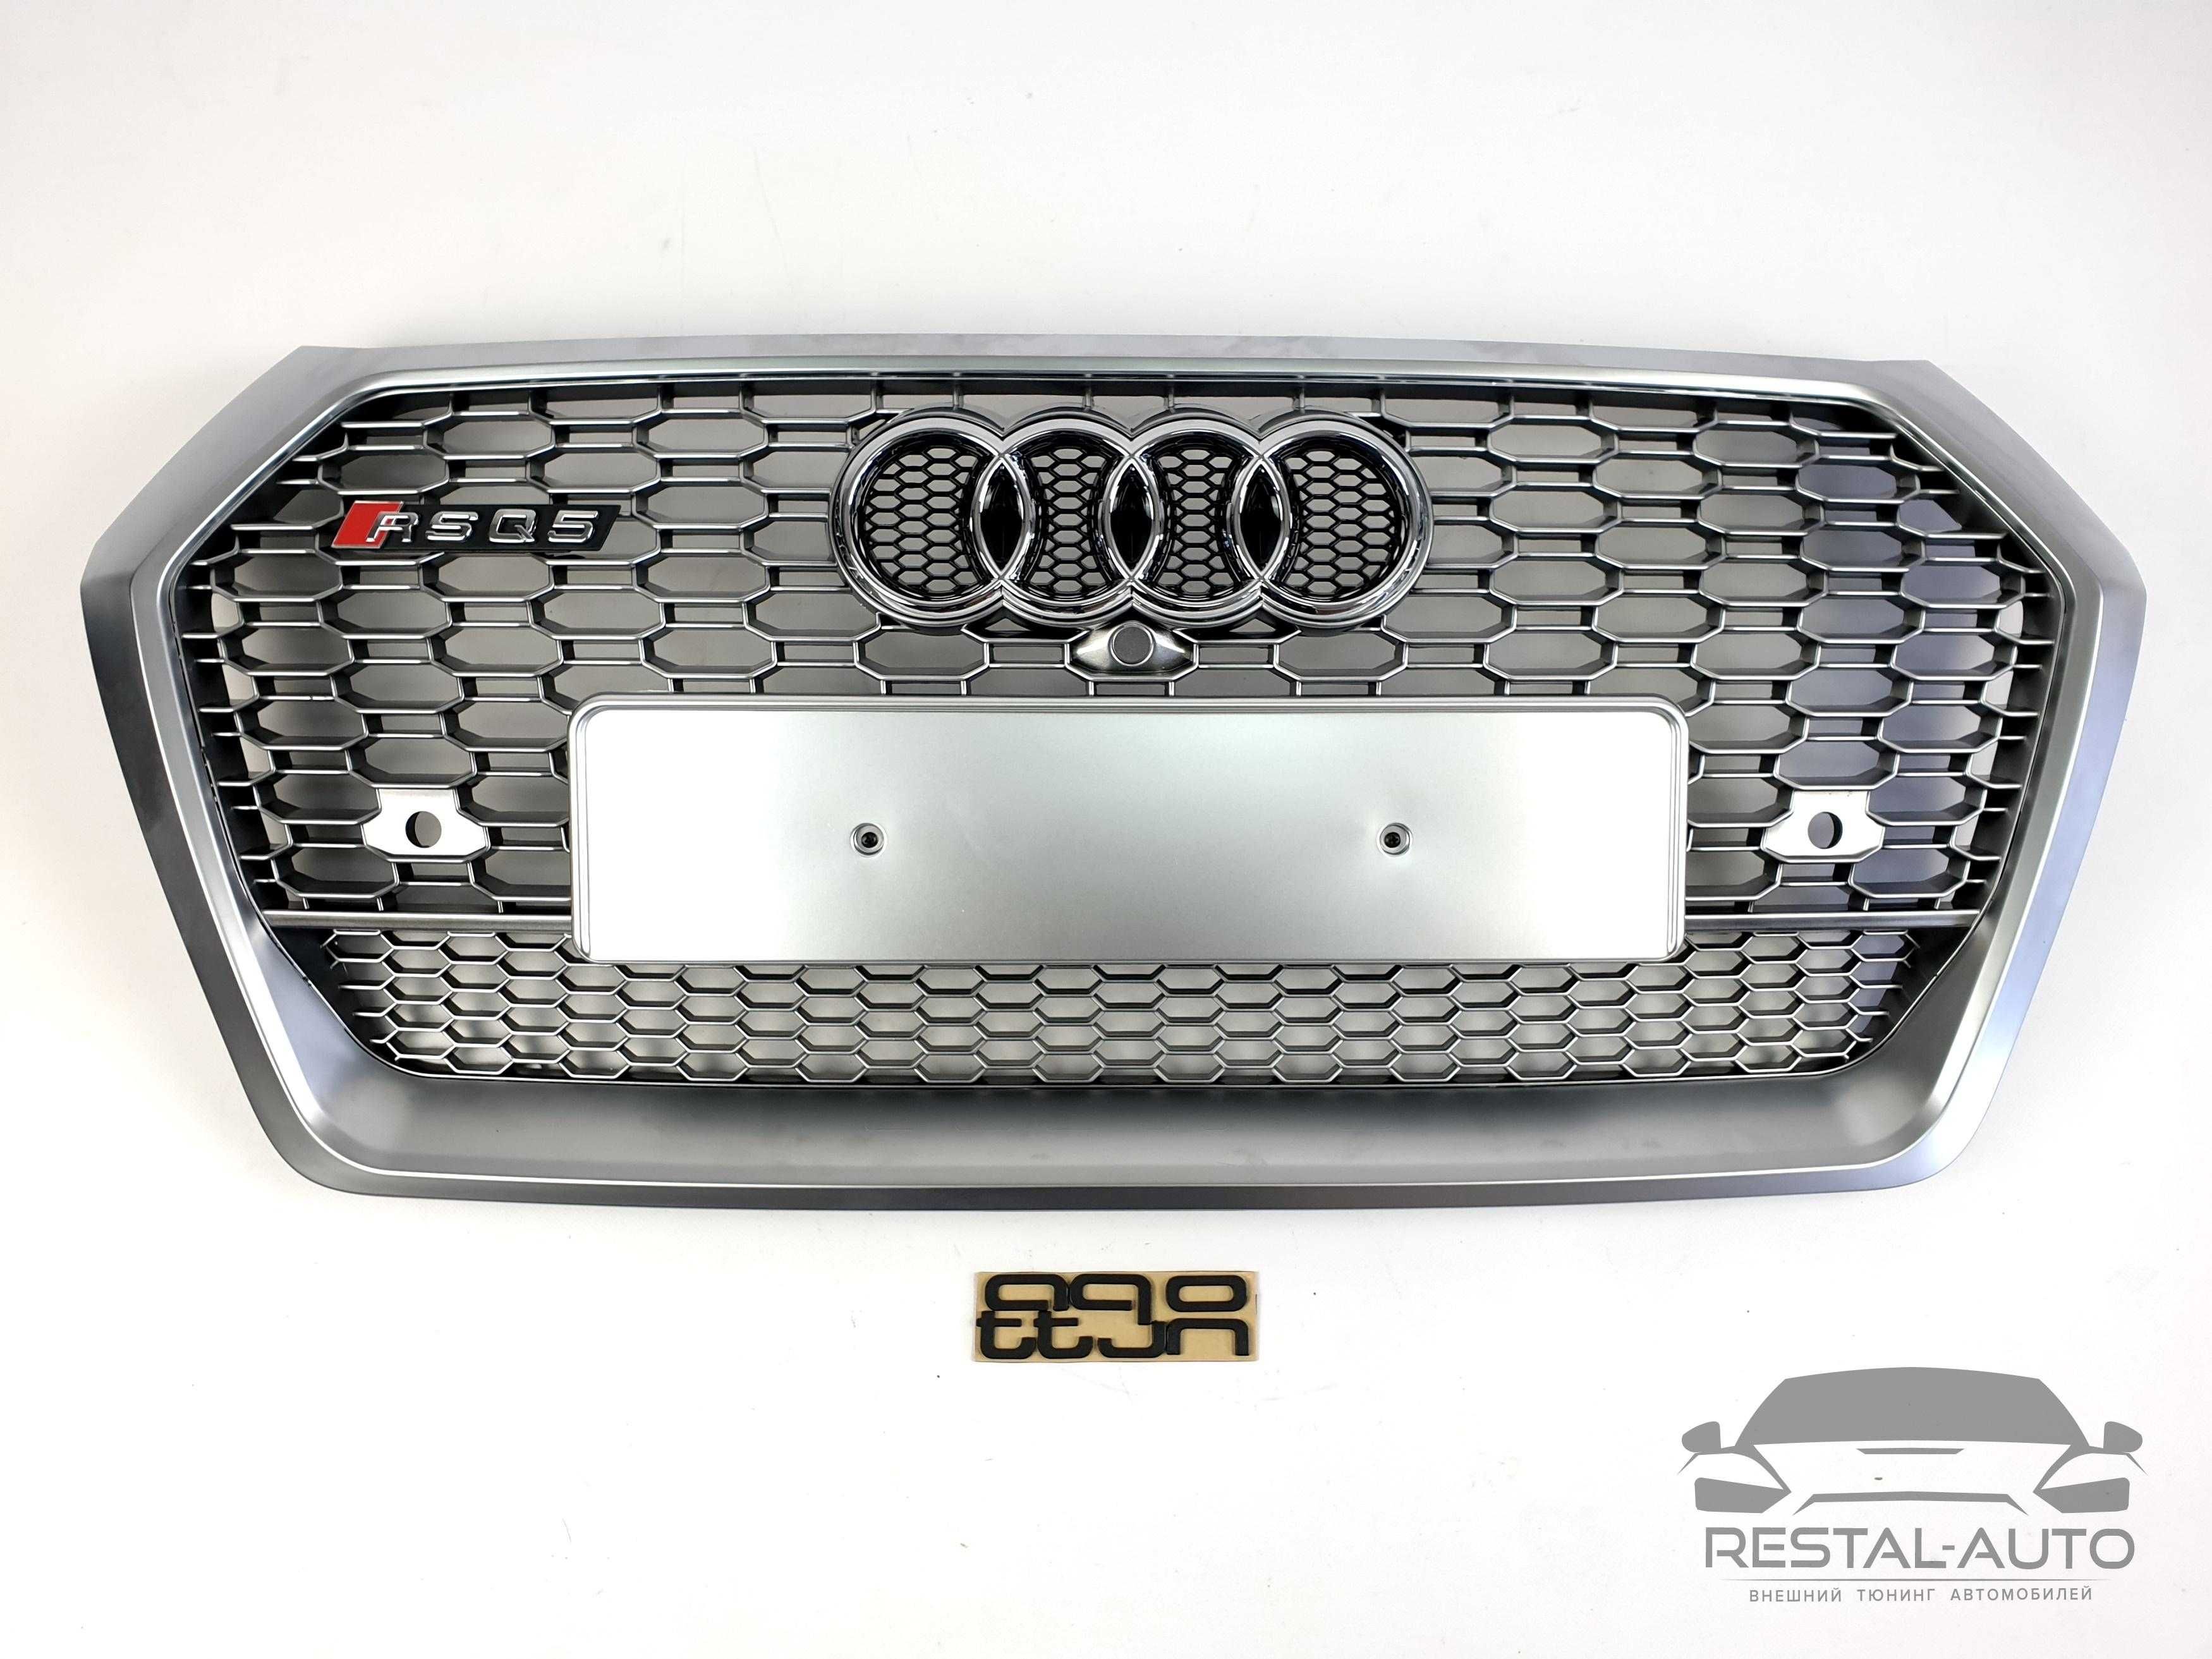 Audi RSQ5 решетка радиатора на audi Q5 2016-2020г в стиле RS